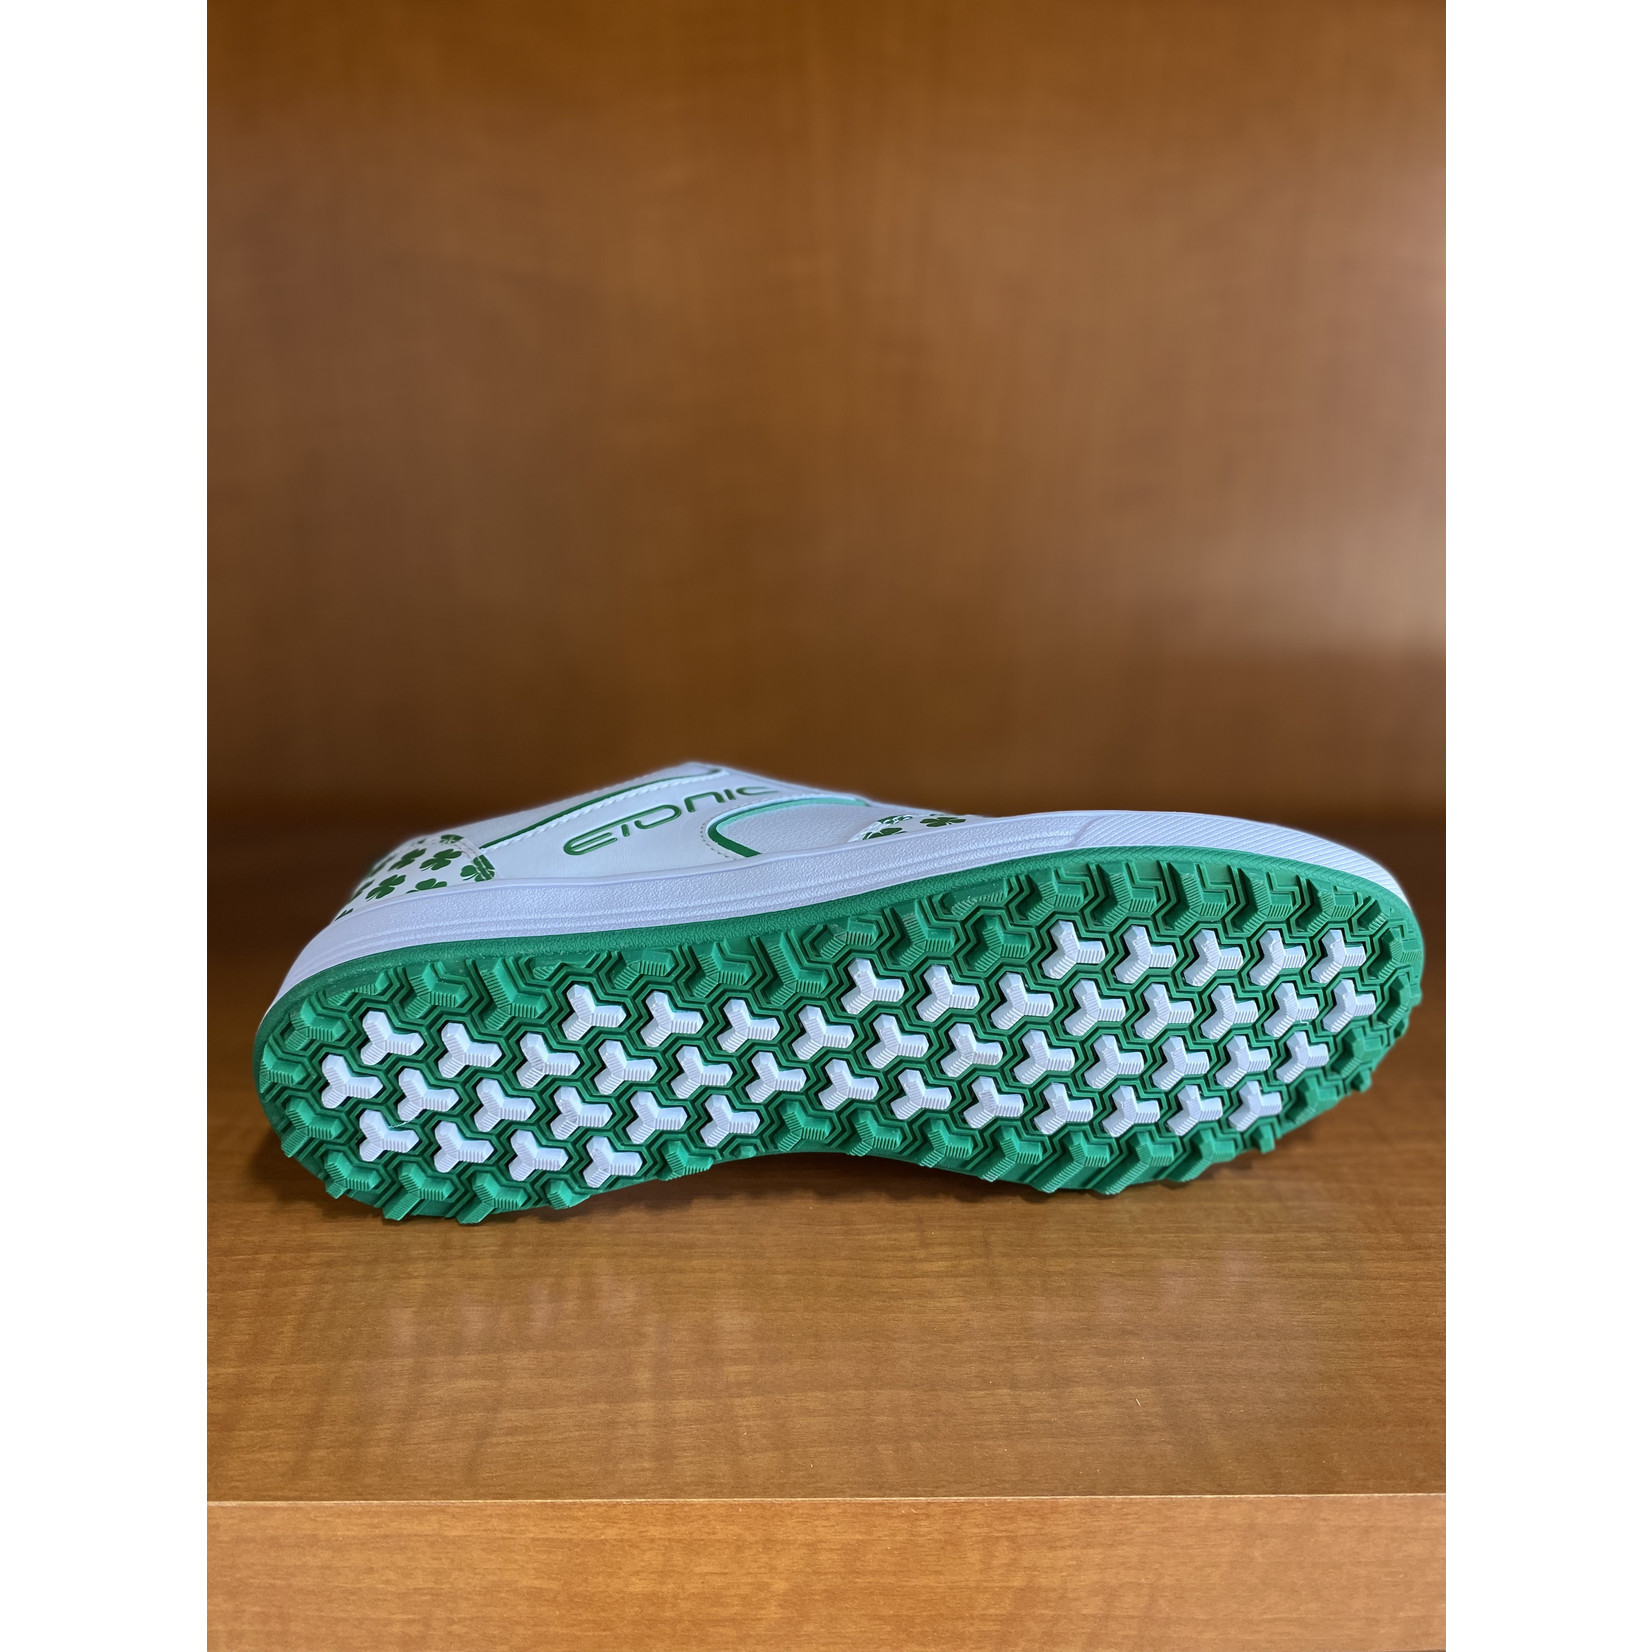 Etonic Golf Shoes (Shamrock) - Size9.5